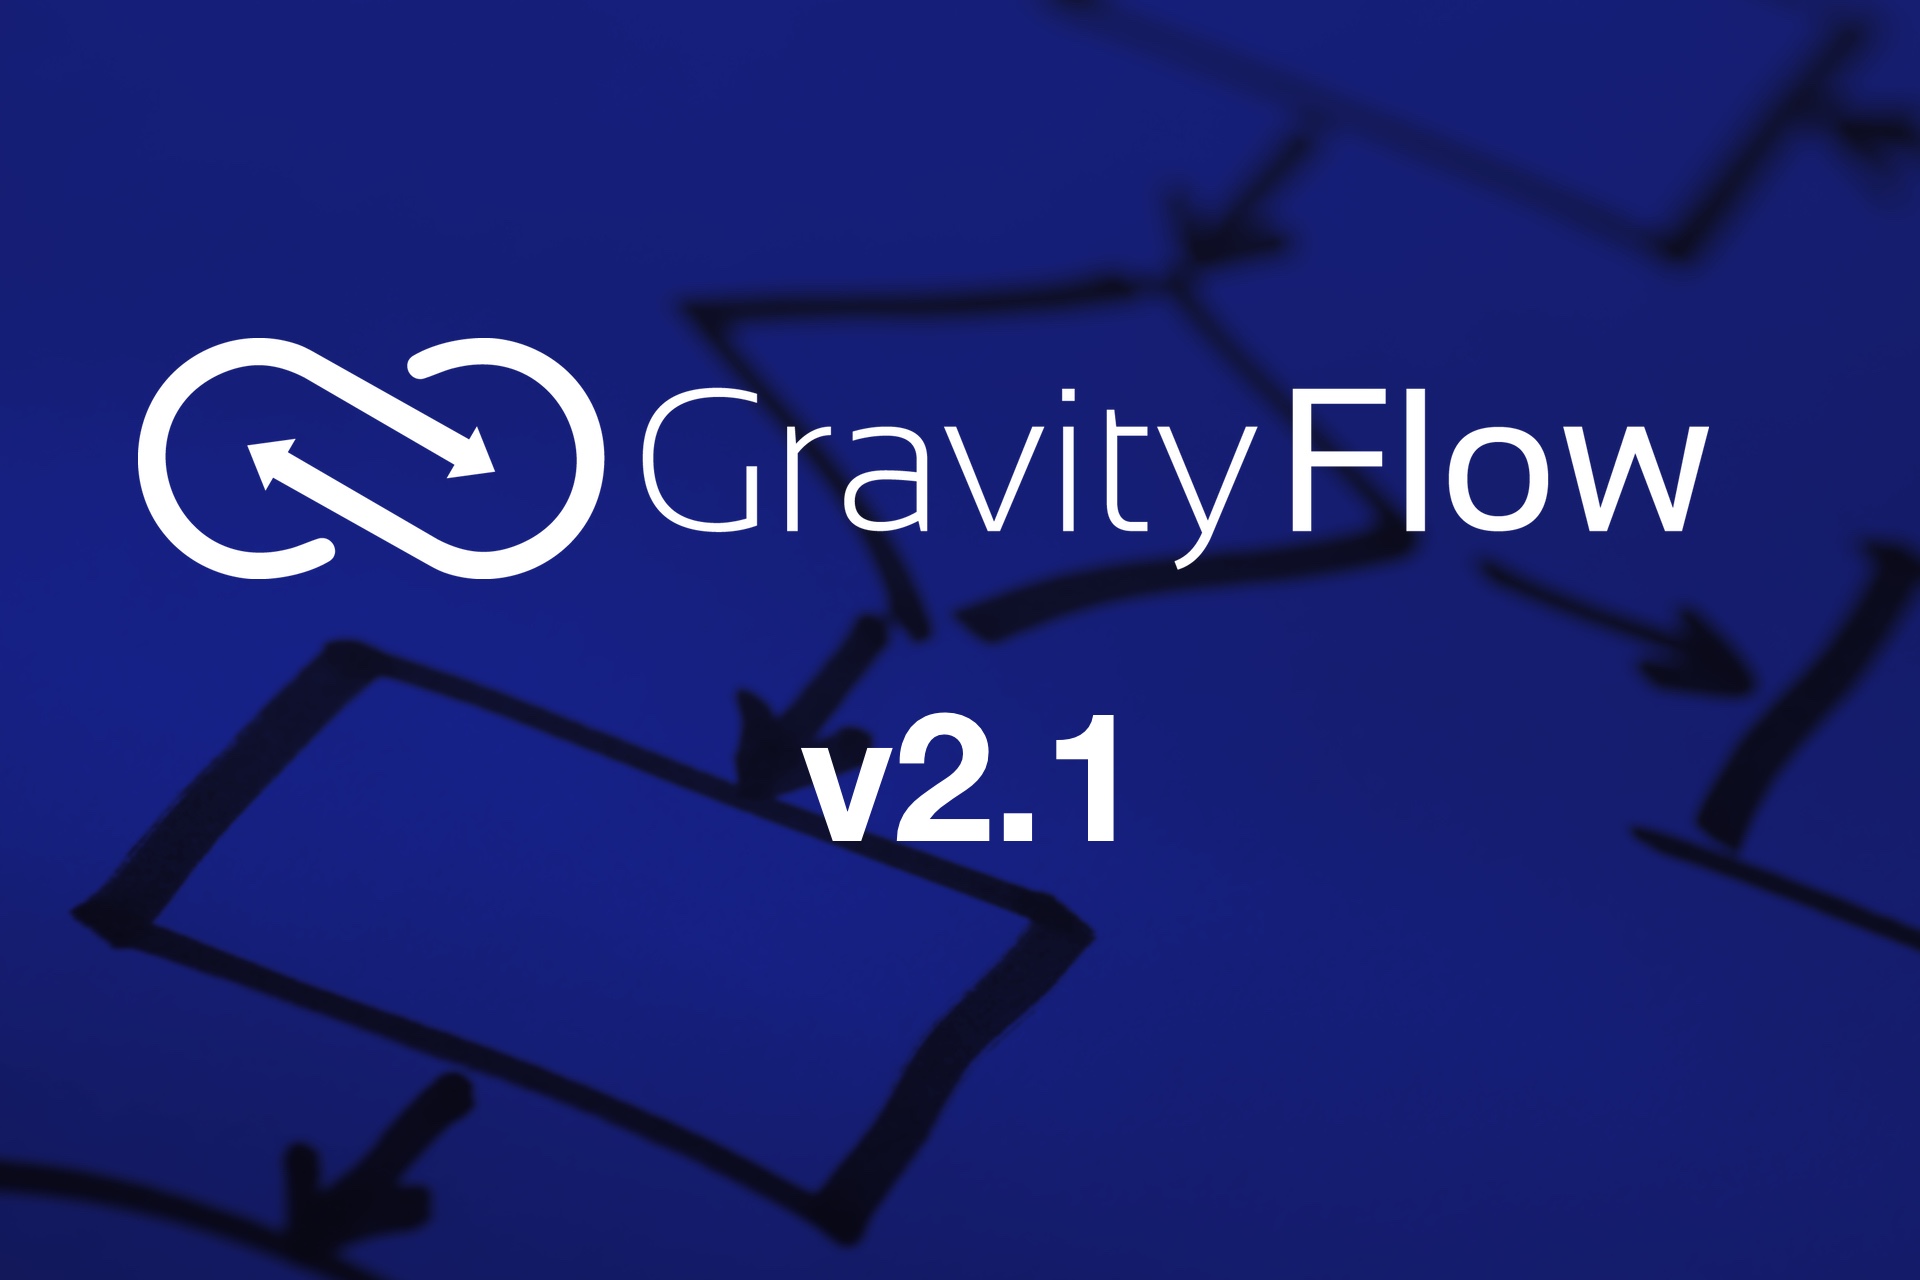 Gravity Flow v2.1 Released